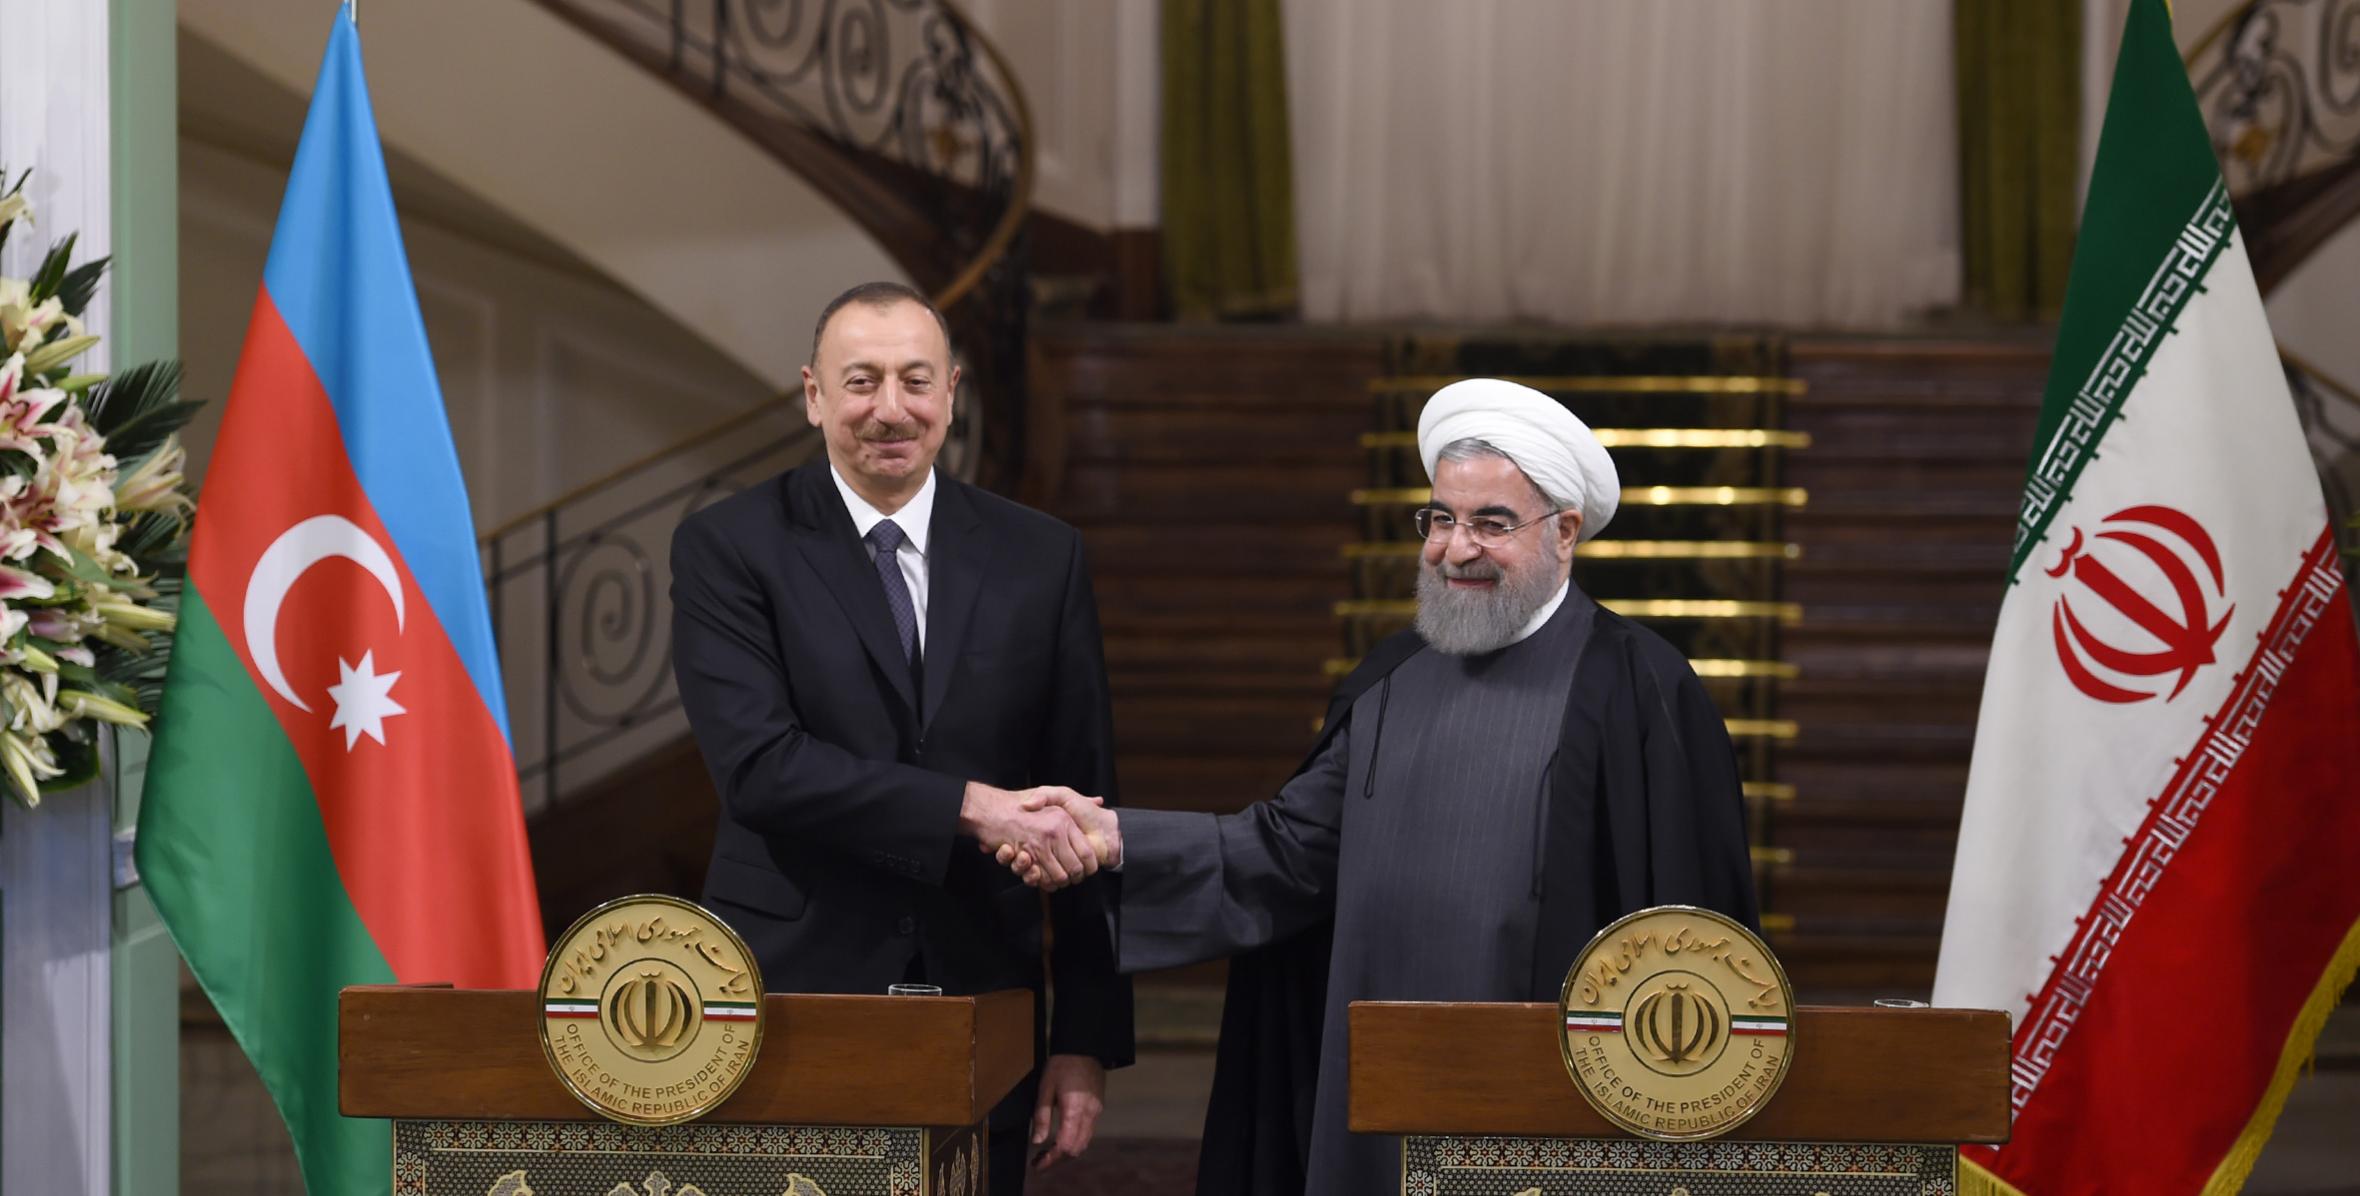 Президенты Азербайджана и Ирана выступили с заявлениями для печати